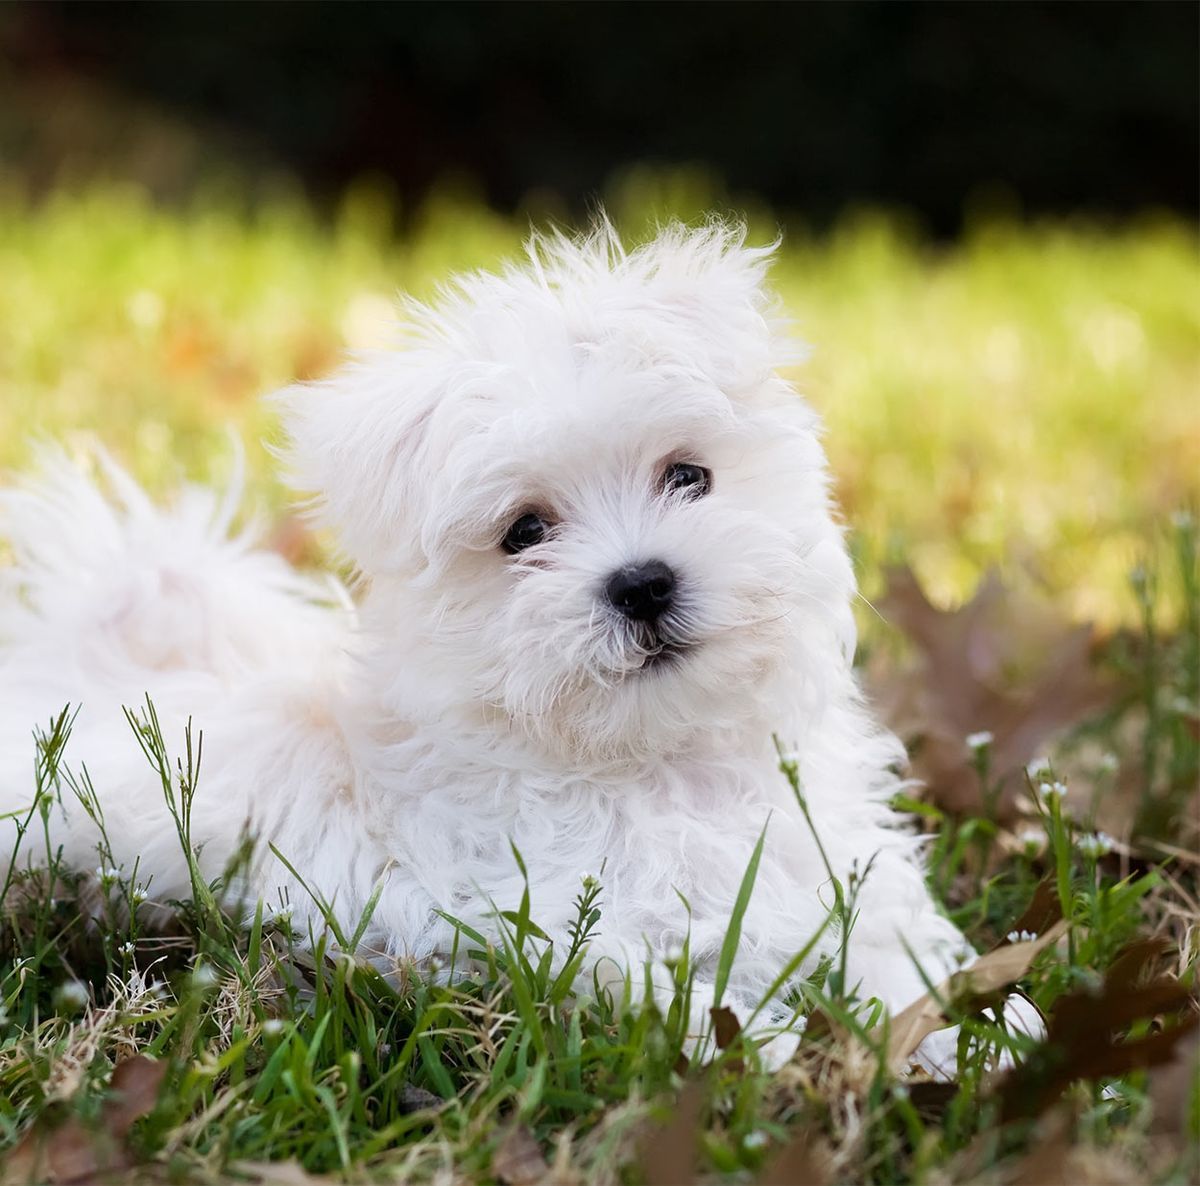 Mažiausias šuo pasaulyje - mažos veislės ir mažų veislių sveikata